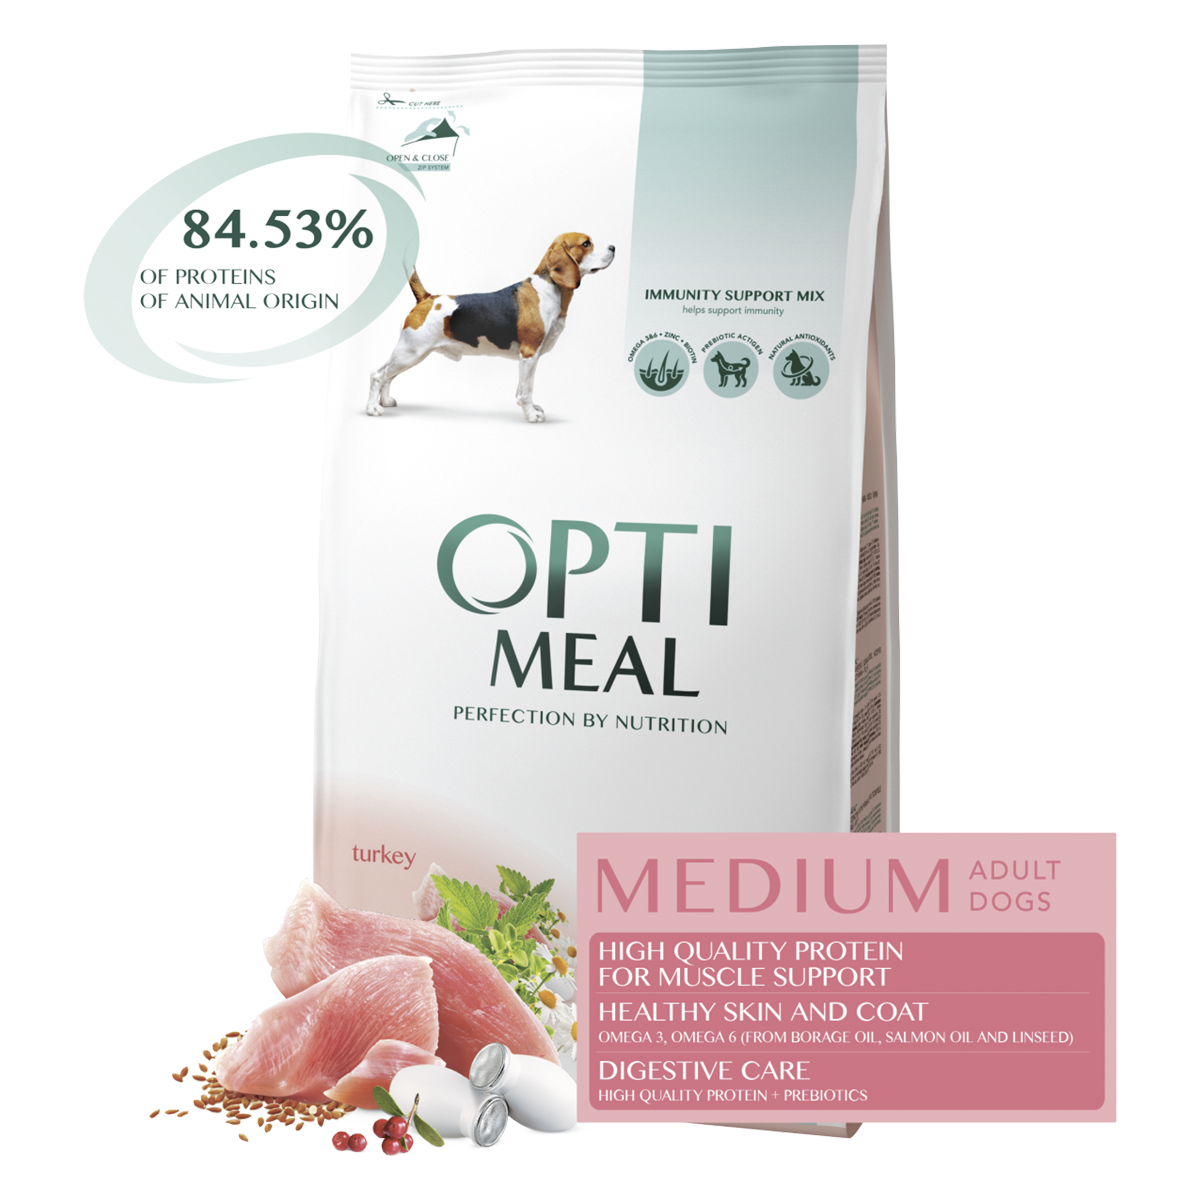 Корм для собак Optimeal Dog Adult Medium, 12 кг